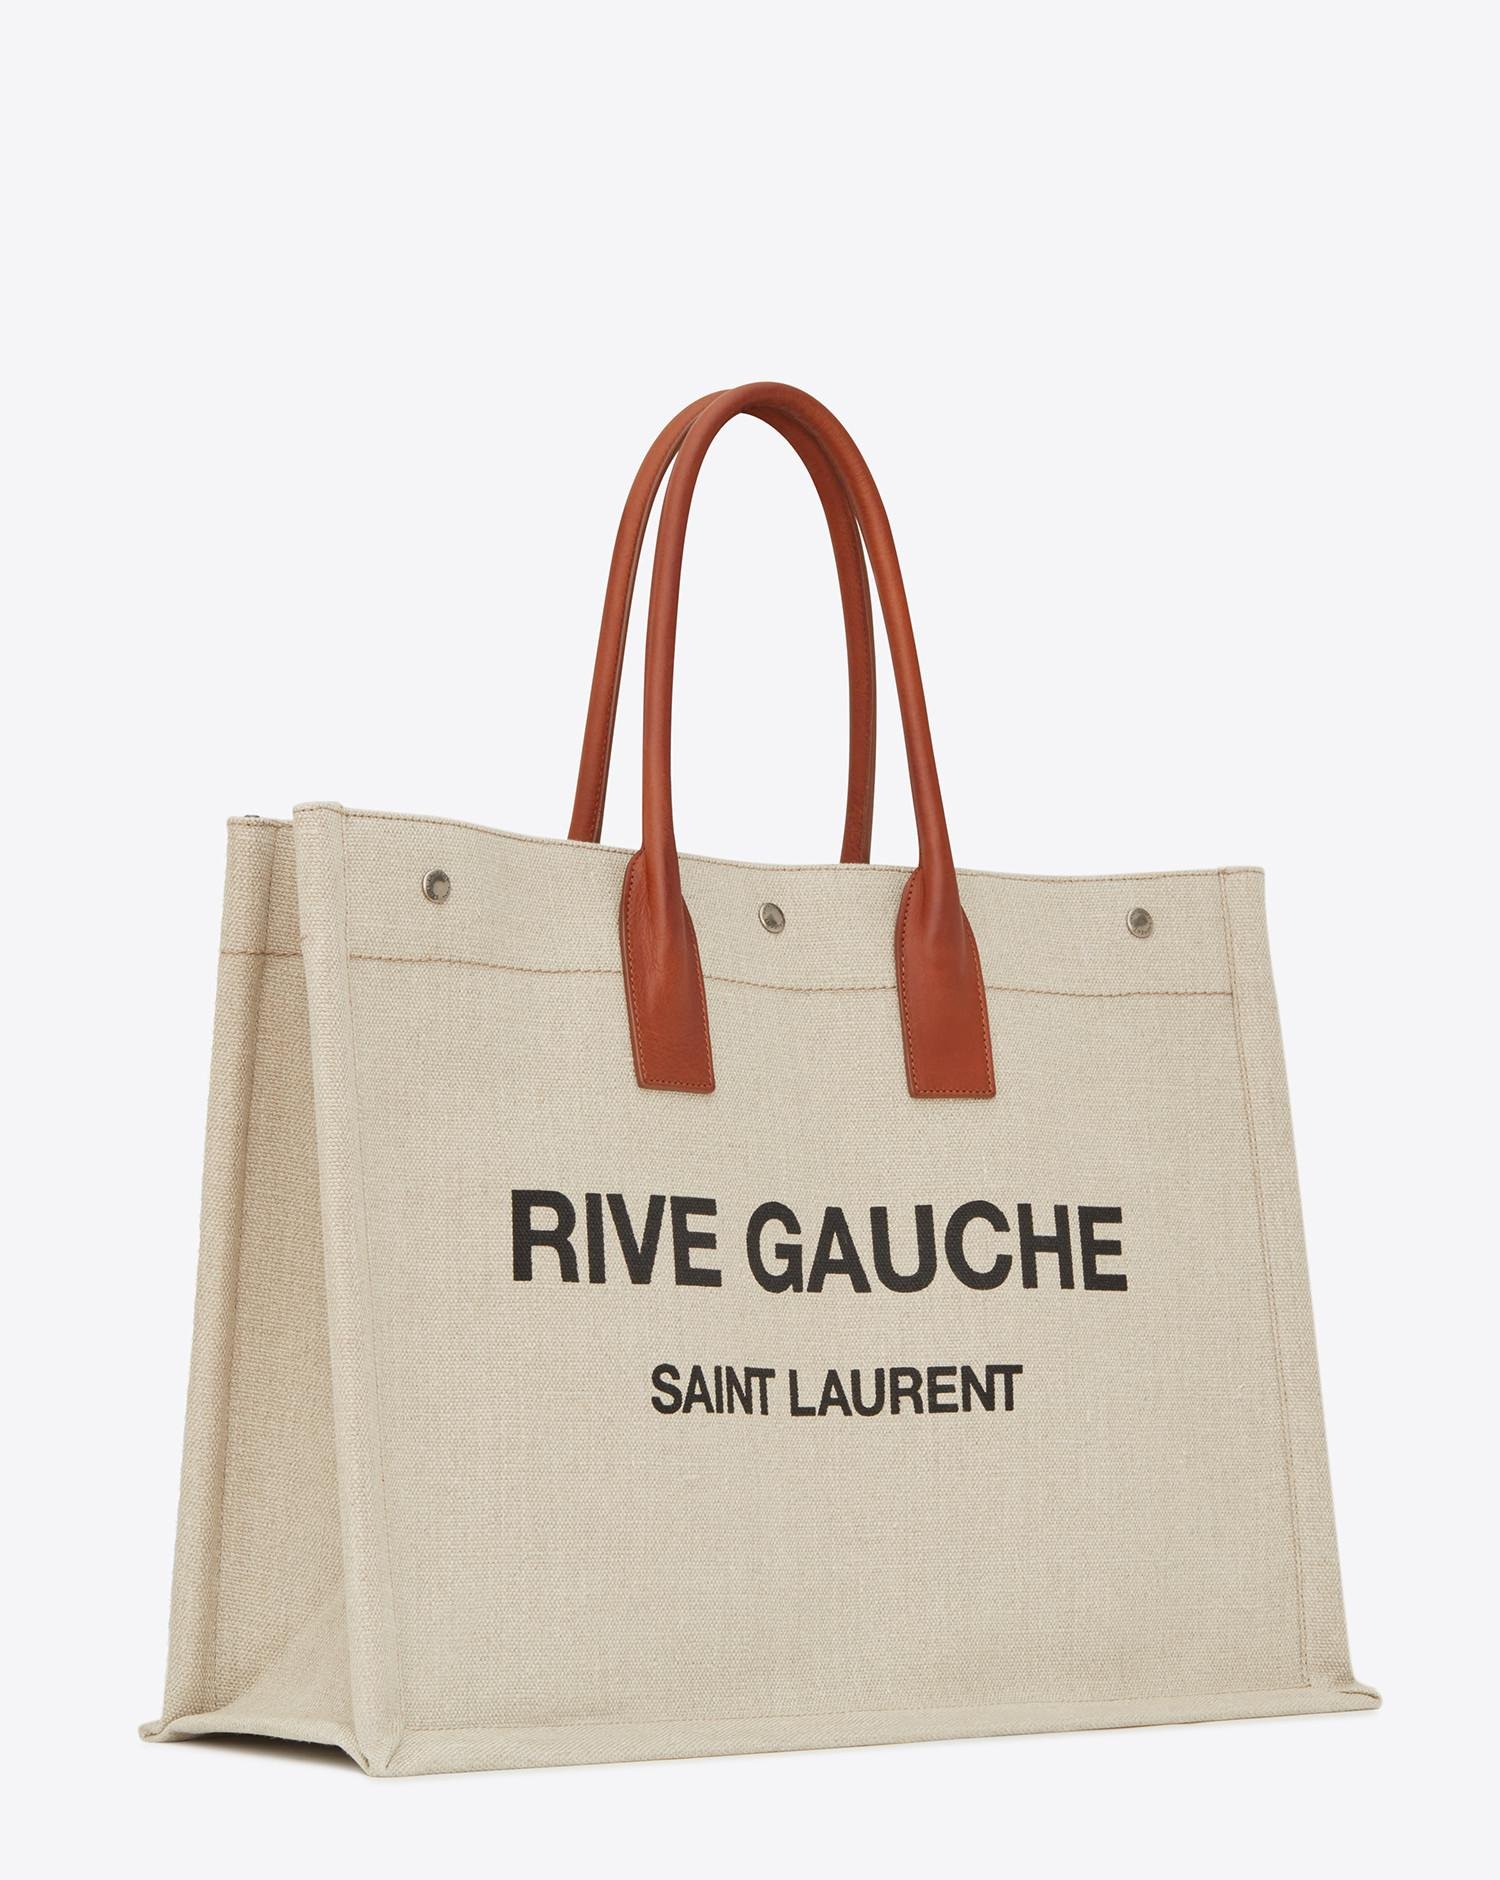 Saint Laurent Rive Gauche Tote Bag In Beige Linen And Cognac 